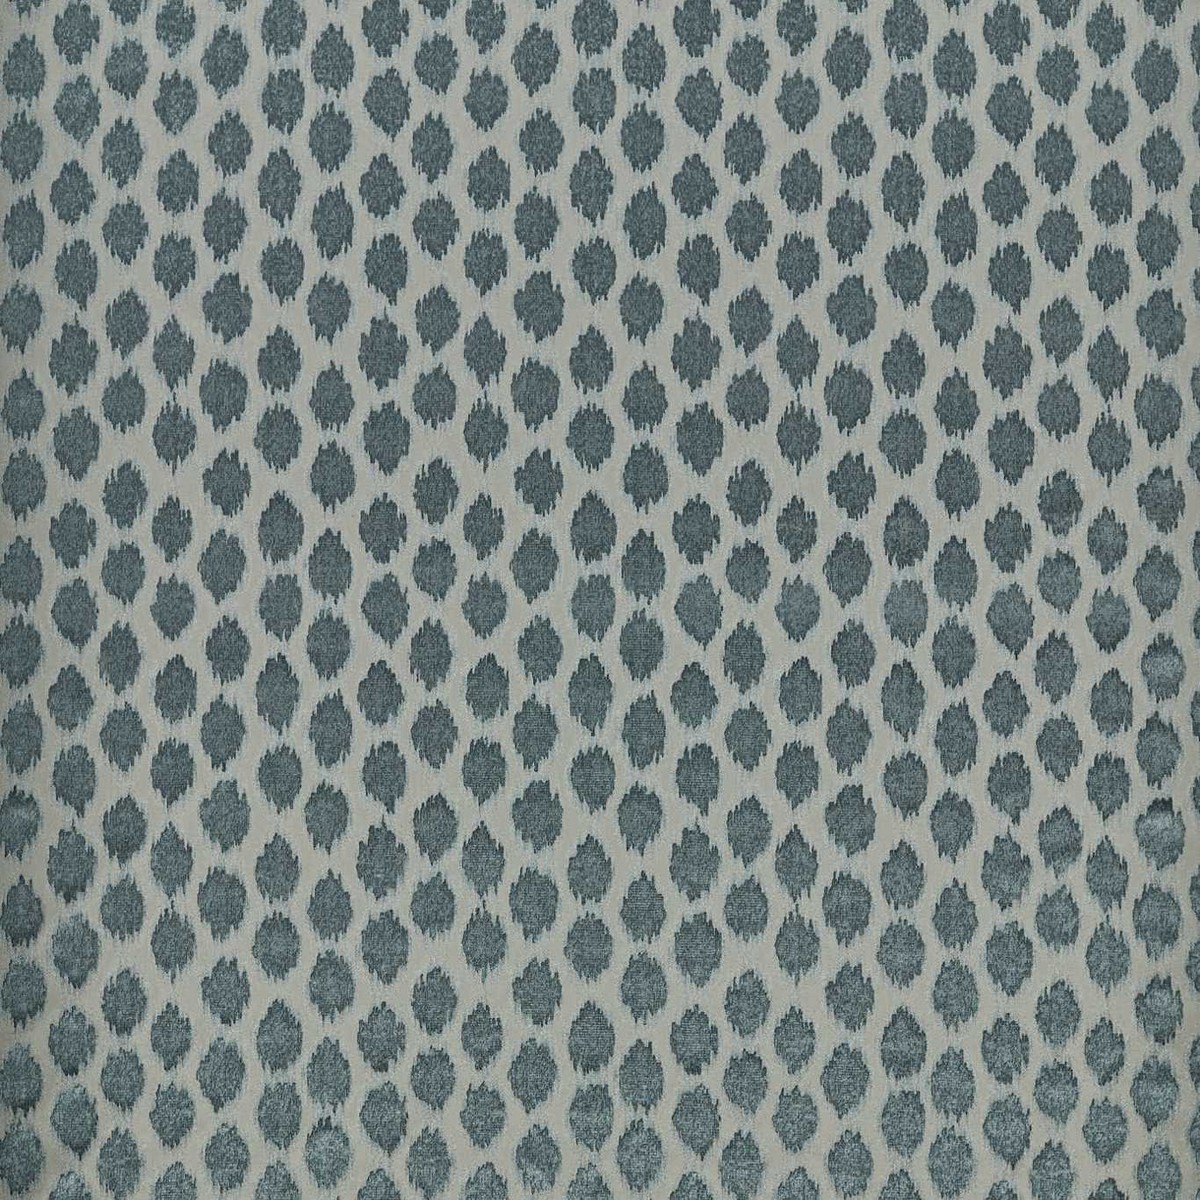 Ikat Spot Blue Stone Fabric by Zoffany